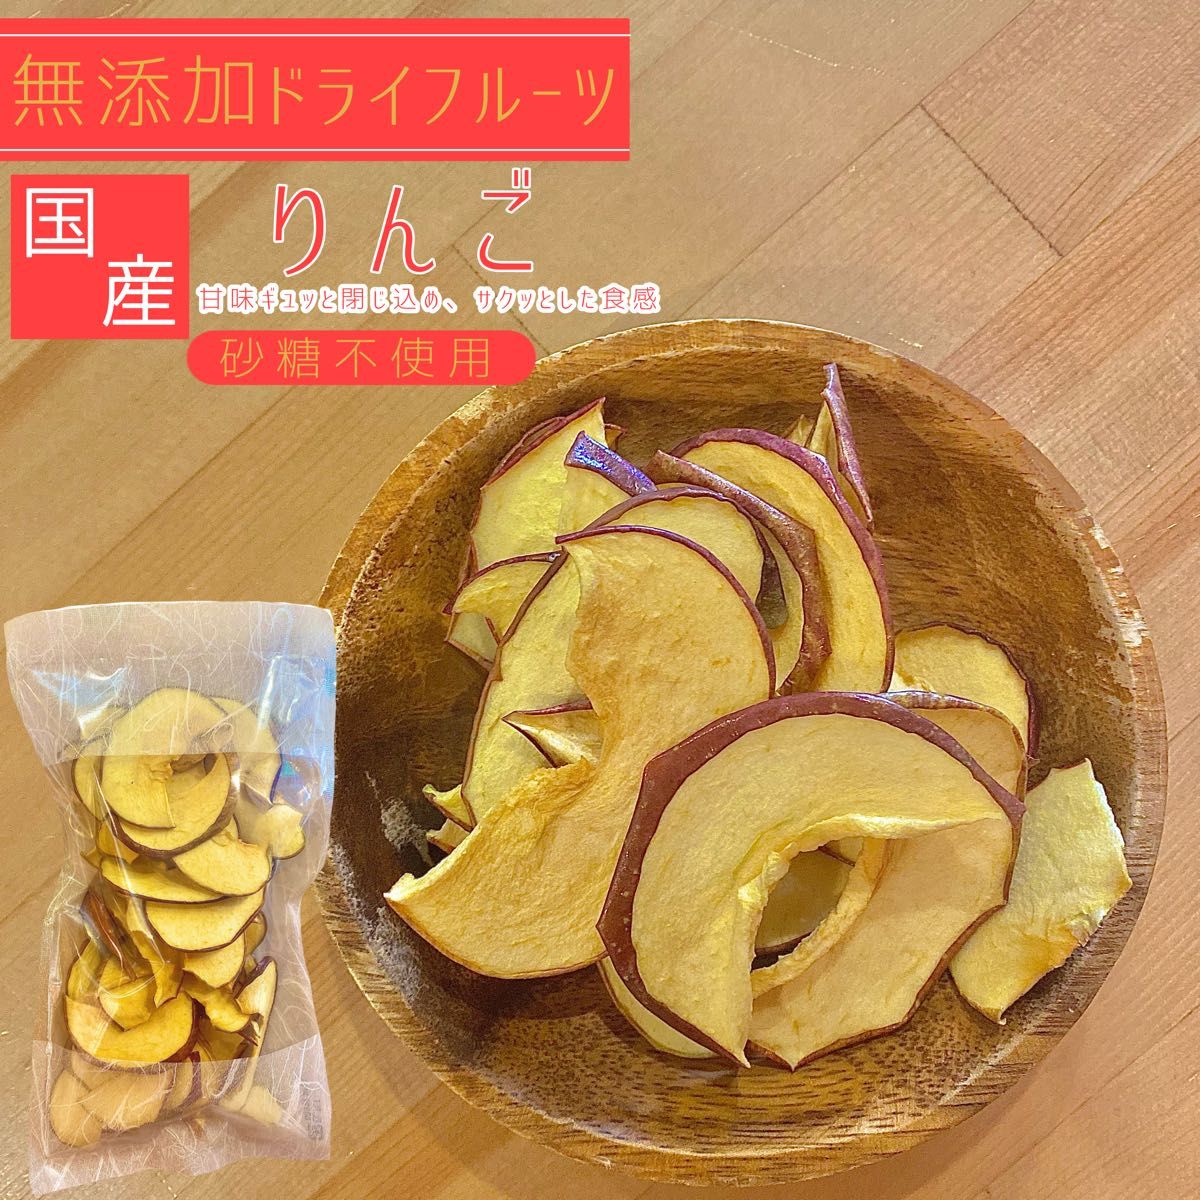 【3袋】青森県産りんごチップス サンふじ 120g 無添加 ドライフルーツ ドライリンゴ リンゴチップス 砂糖不使用